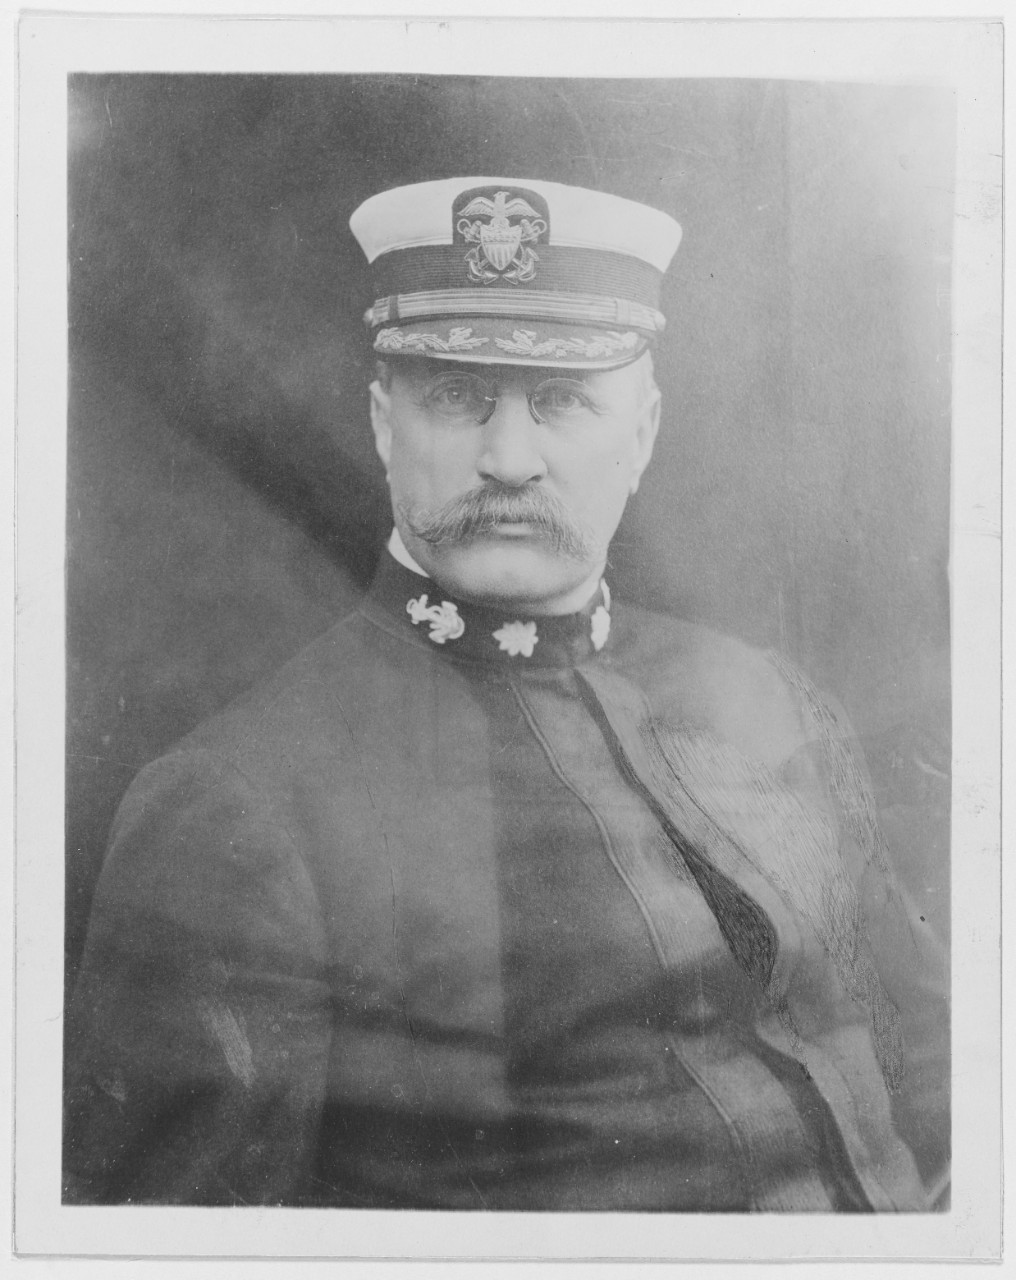 Commander Albert W. Grant, USN